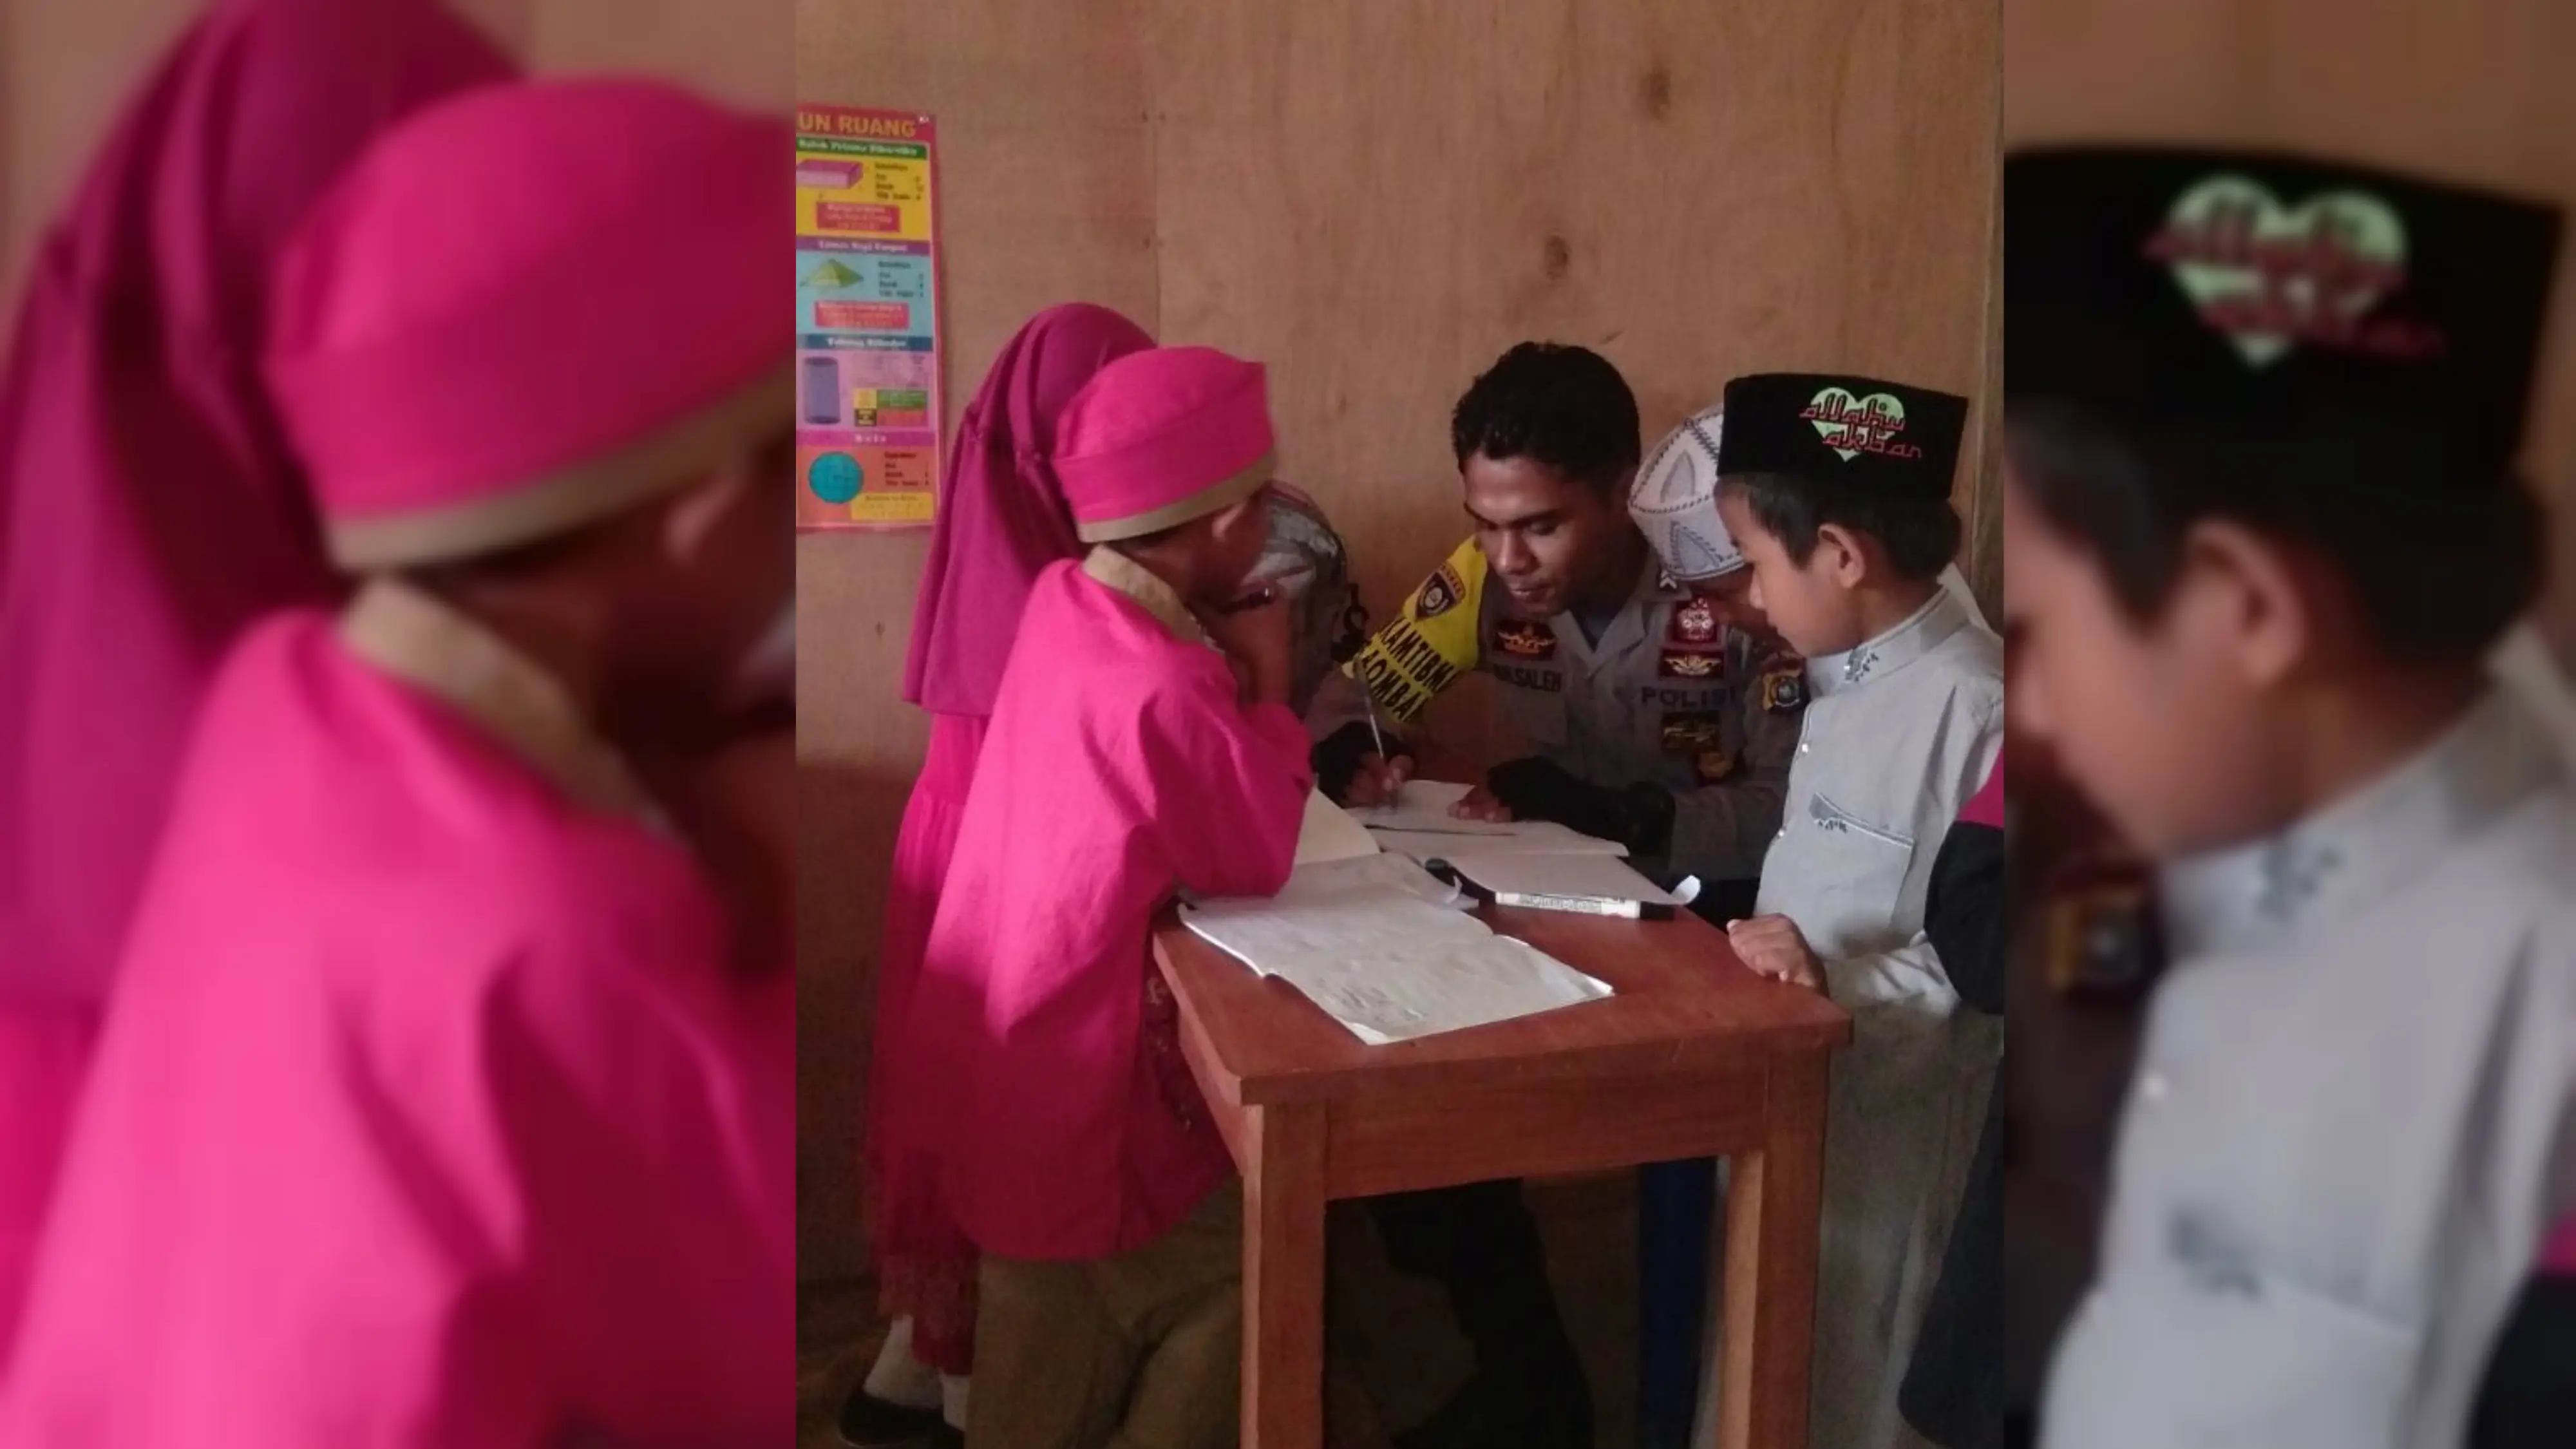 Saleh dianggap berprestasi dan teladan oleh Unit Kerja Presiden Pembina Ideologi Pancasila karena memperjuangkan pembangunan sekolah dasar di Desa Tunas Baru kecamatan Rarowatu Utara kabupaten Bombana, Sulawesi Tenggara. (dok. Brigadir Saleh)